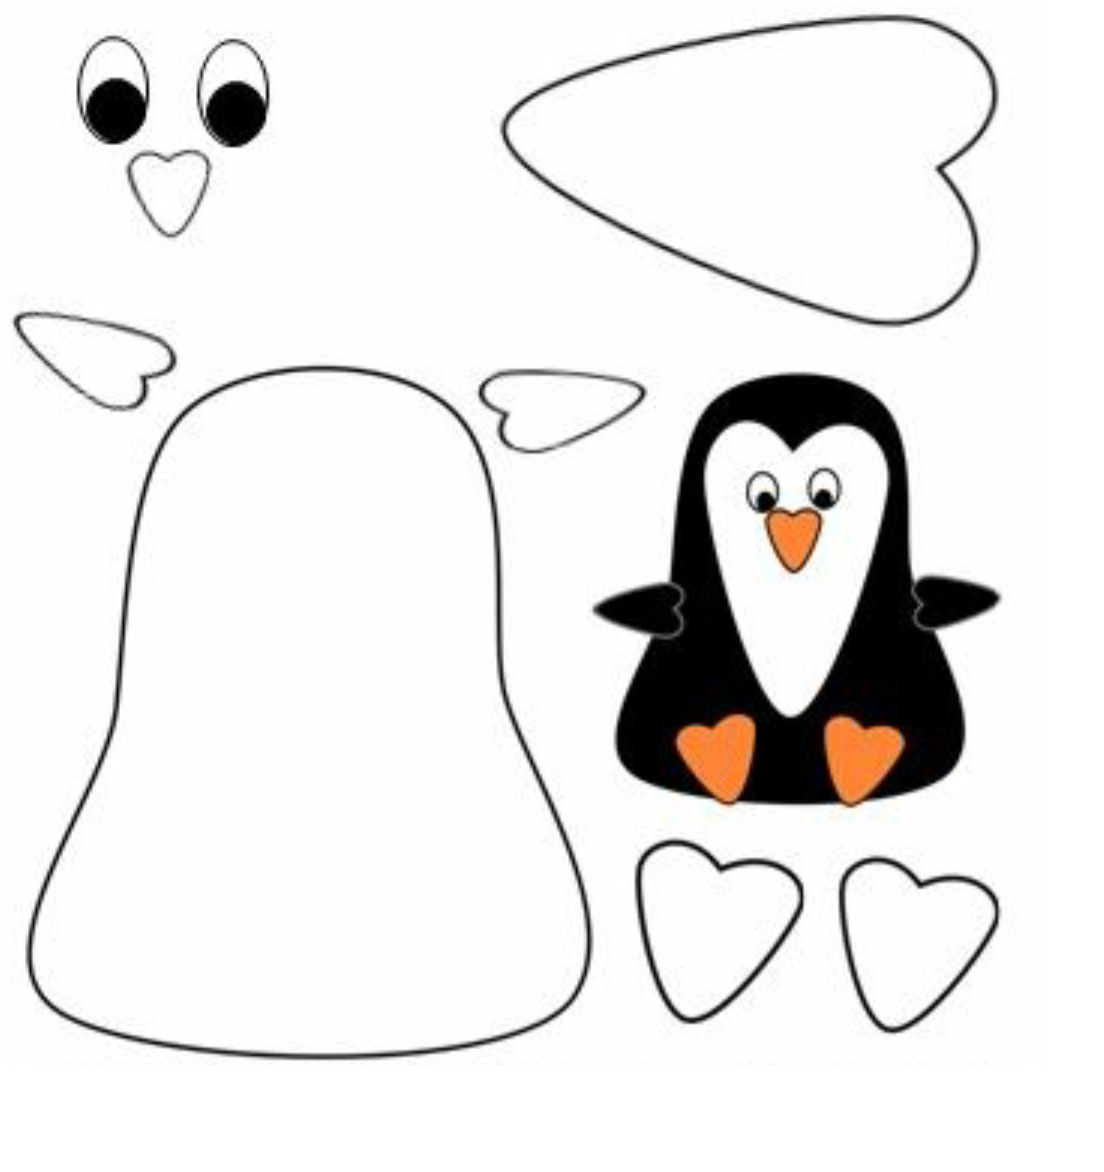 Шаблоны поделок из цветной бумаги. Аппликация Пингвин. Объемная аппликация Пингвин. Шаблон пингвина для аппликации. Аппликация Пингвин из цветной бумаги.